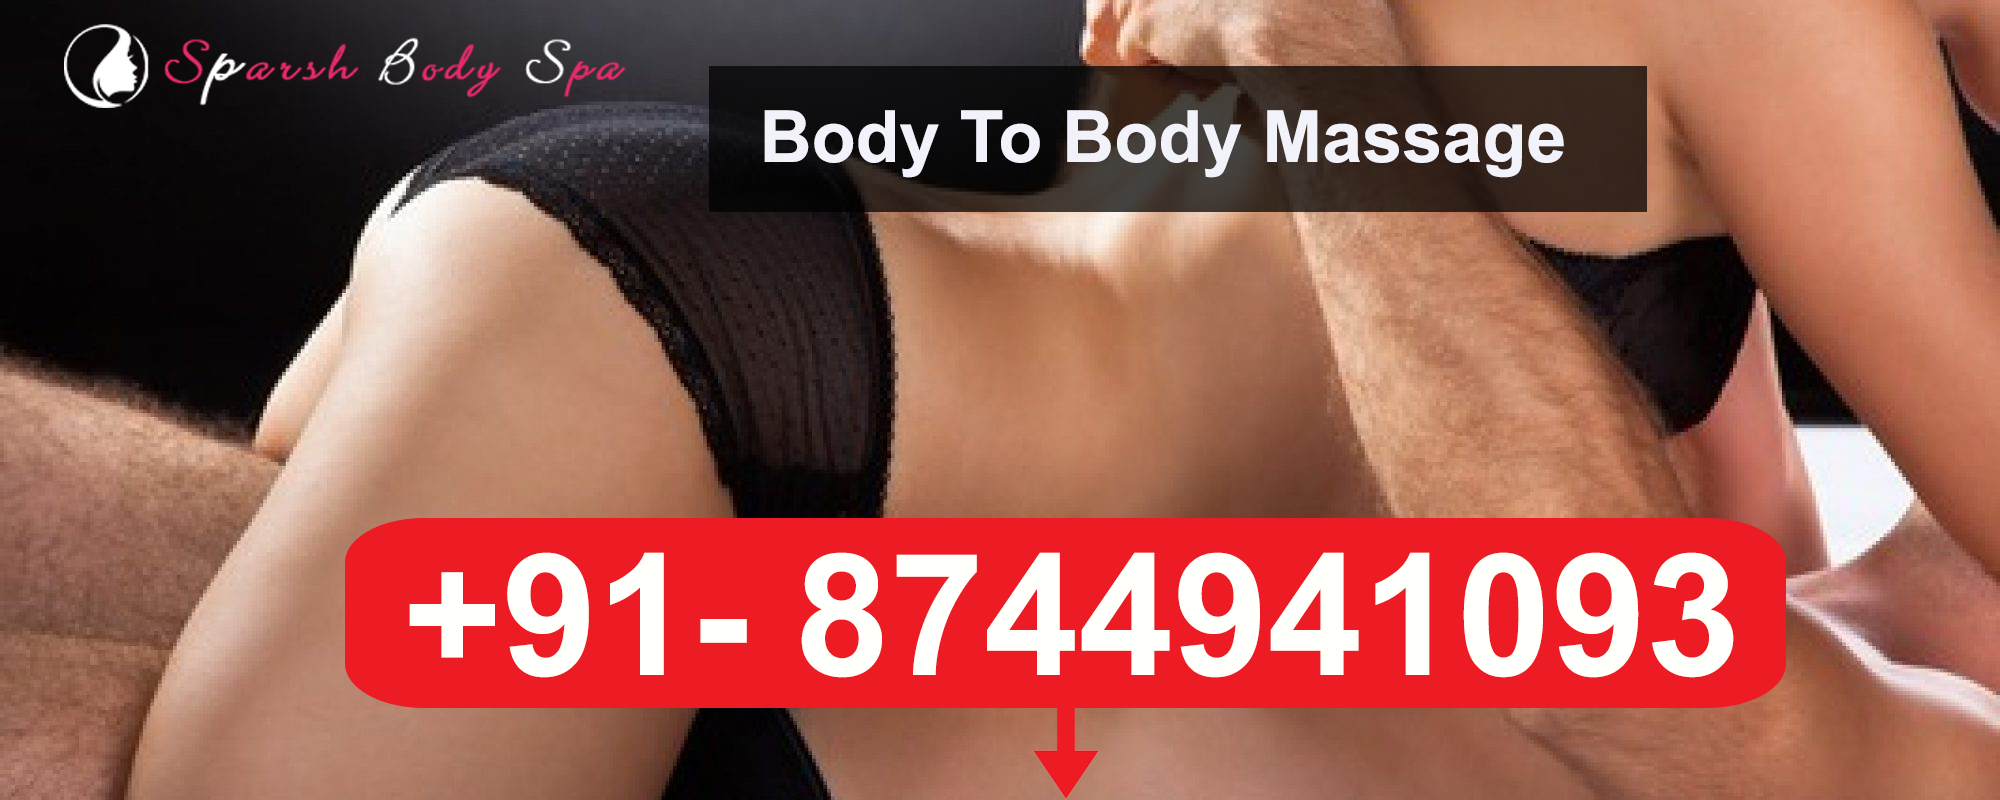 Body Massage Spa in Delhi Price Rohini, Pitampura â€“ Body to Body Massage in  Delhi by Female with Price